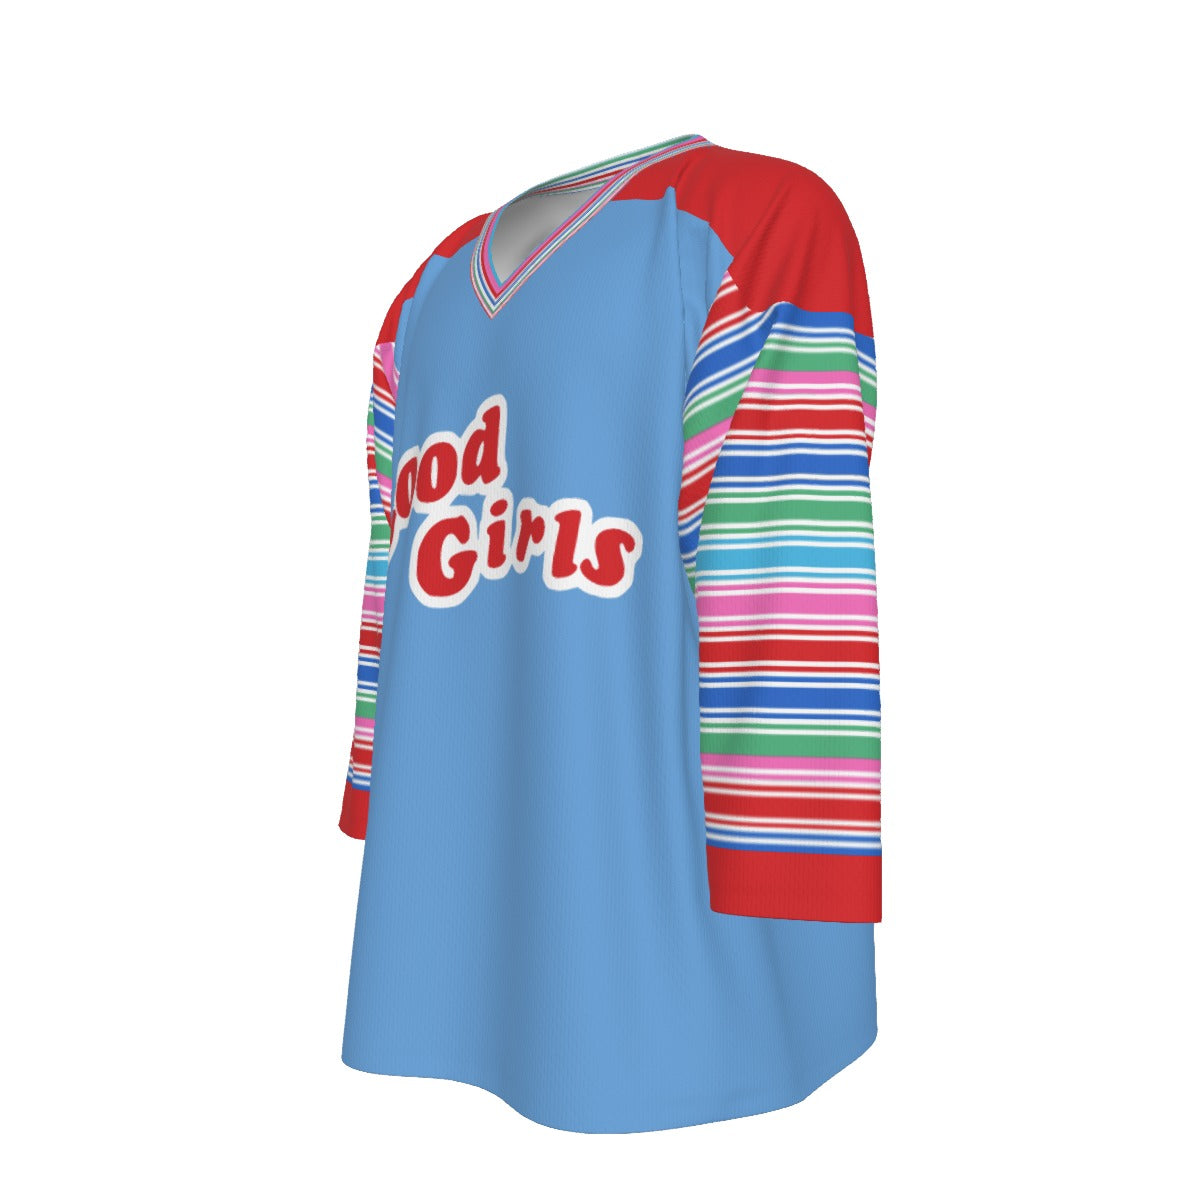 Chucky / Good Girls Unisex V-neck Hockey Jersey